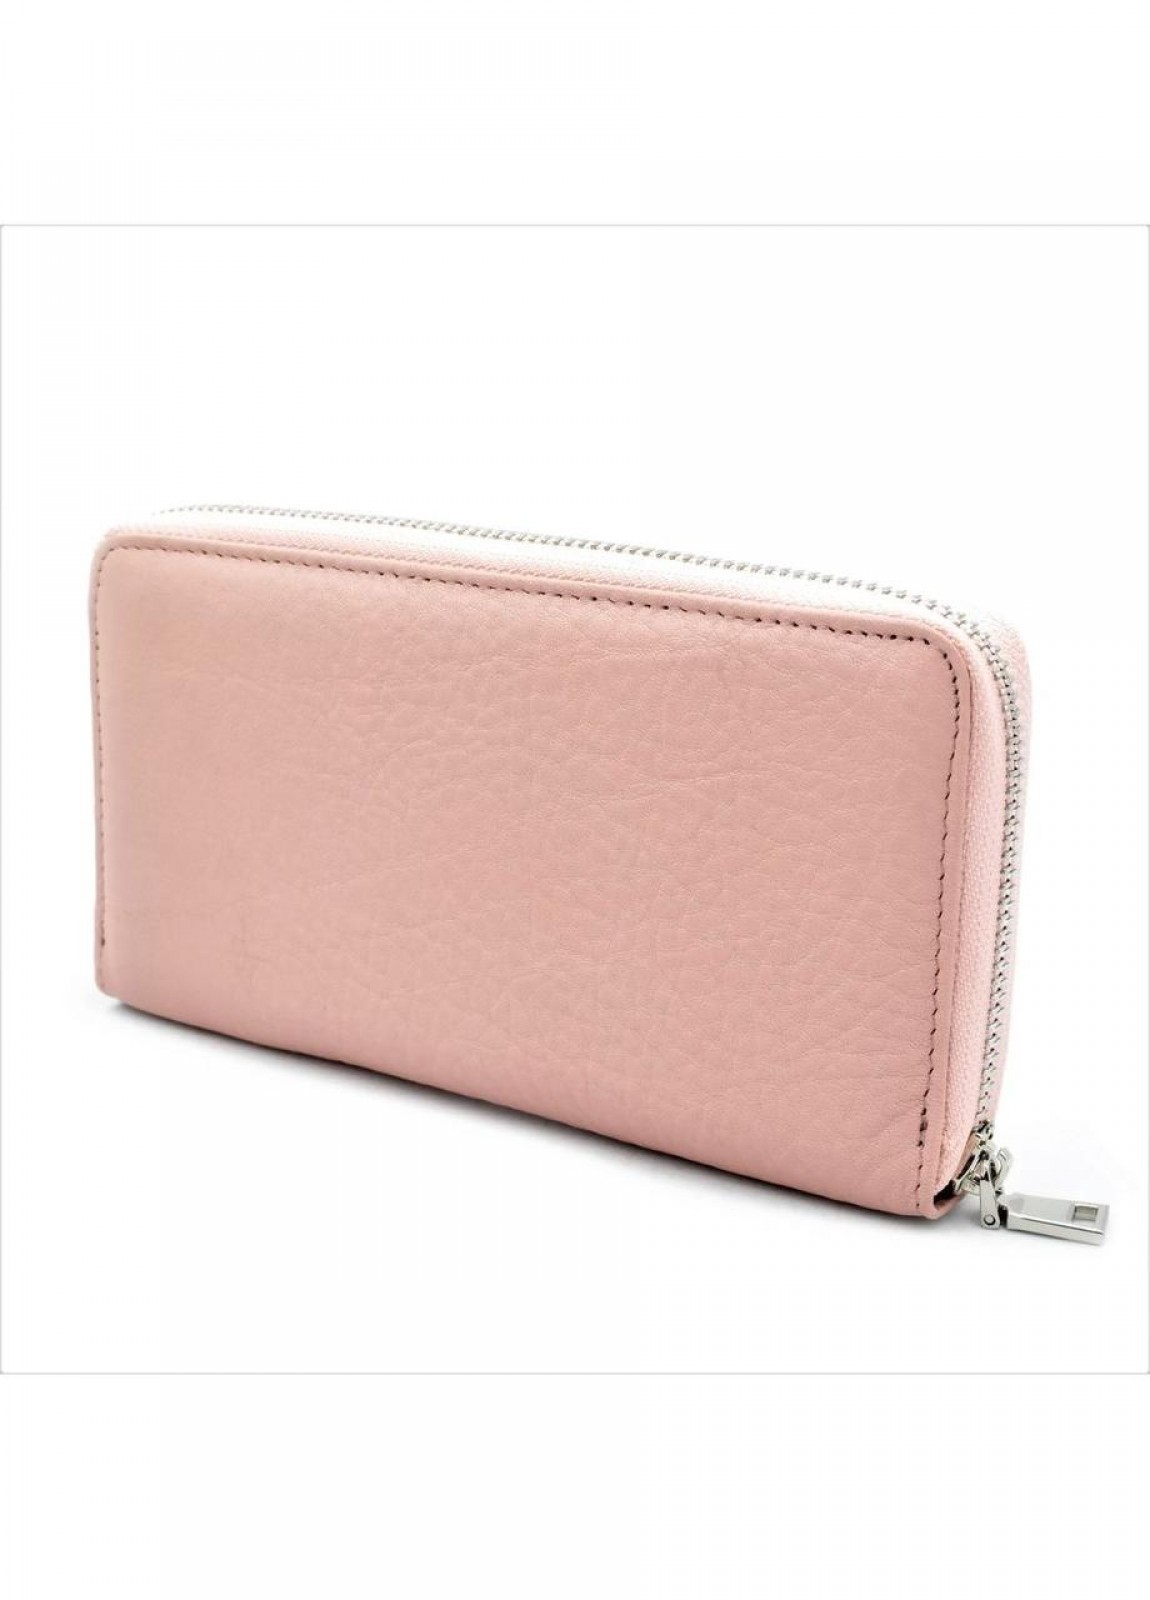 Жіночий шкіряний гаманець рожевий 295652